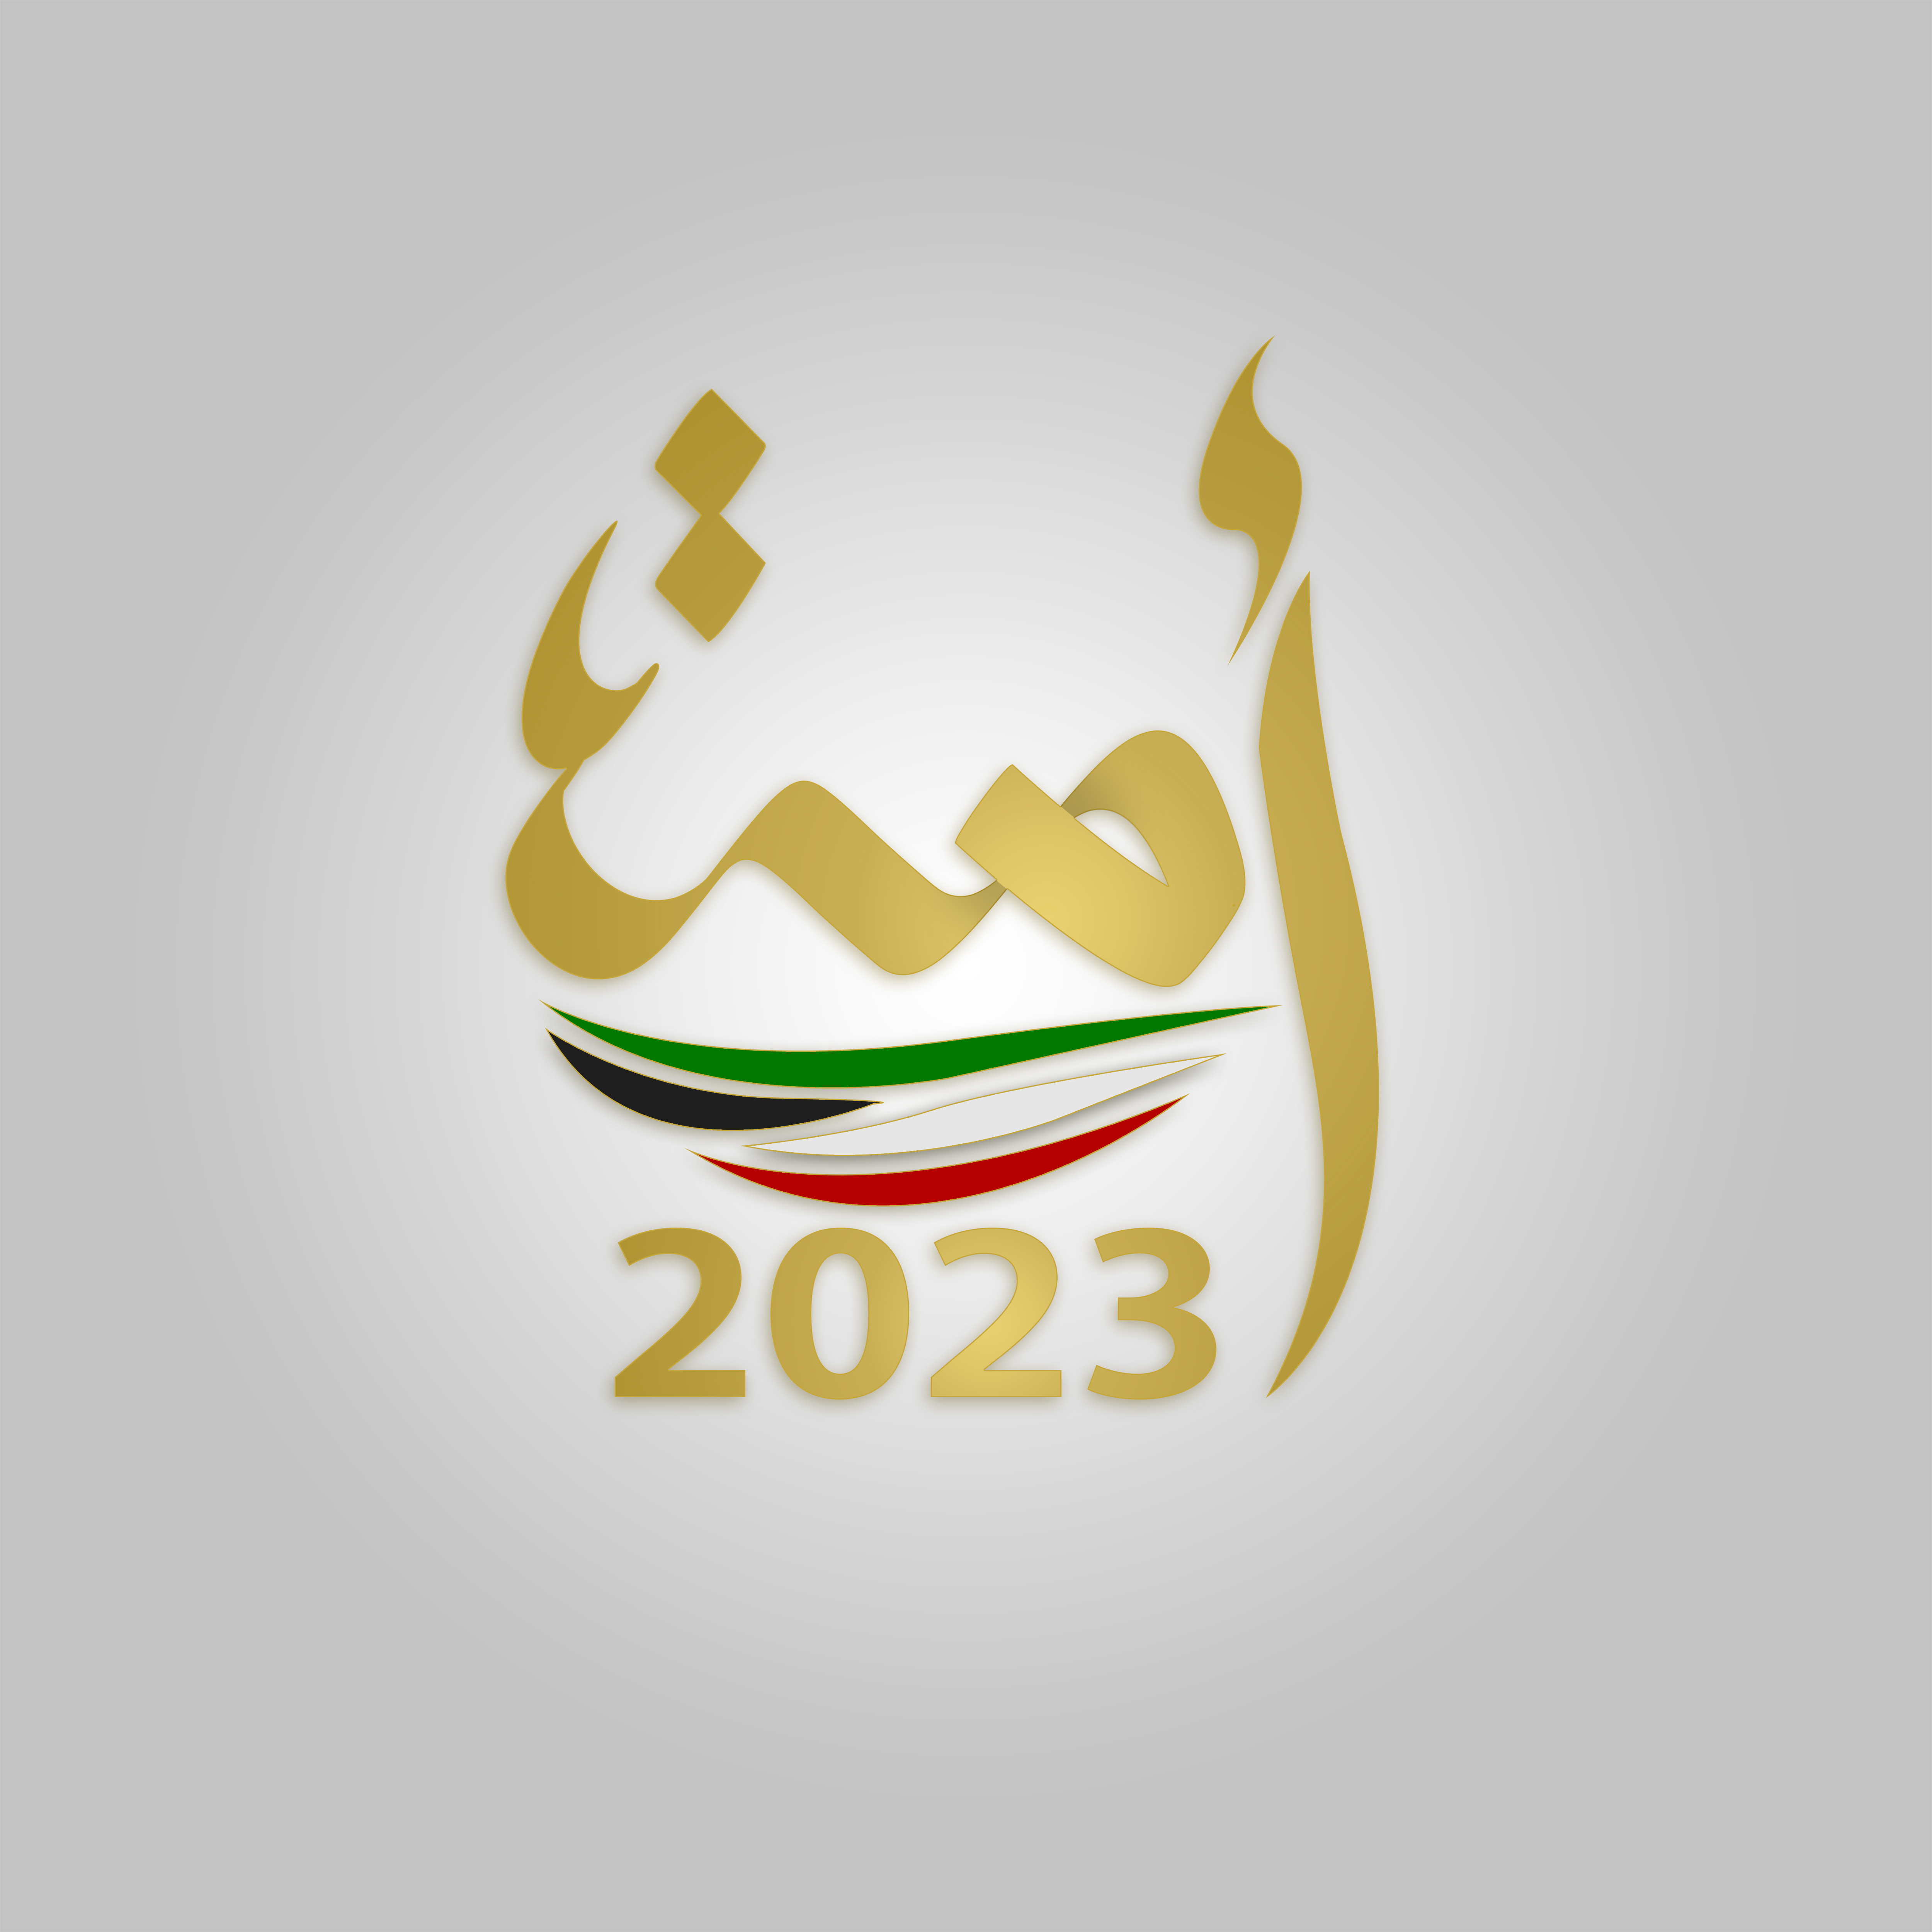 السير الذاتية للفائزين بعضوية مجلس الأمة الكويتي (أمة 2023) عن الدائرة الانتخابية الرابعة